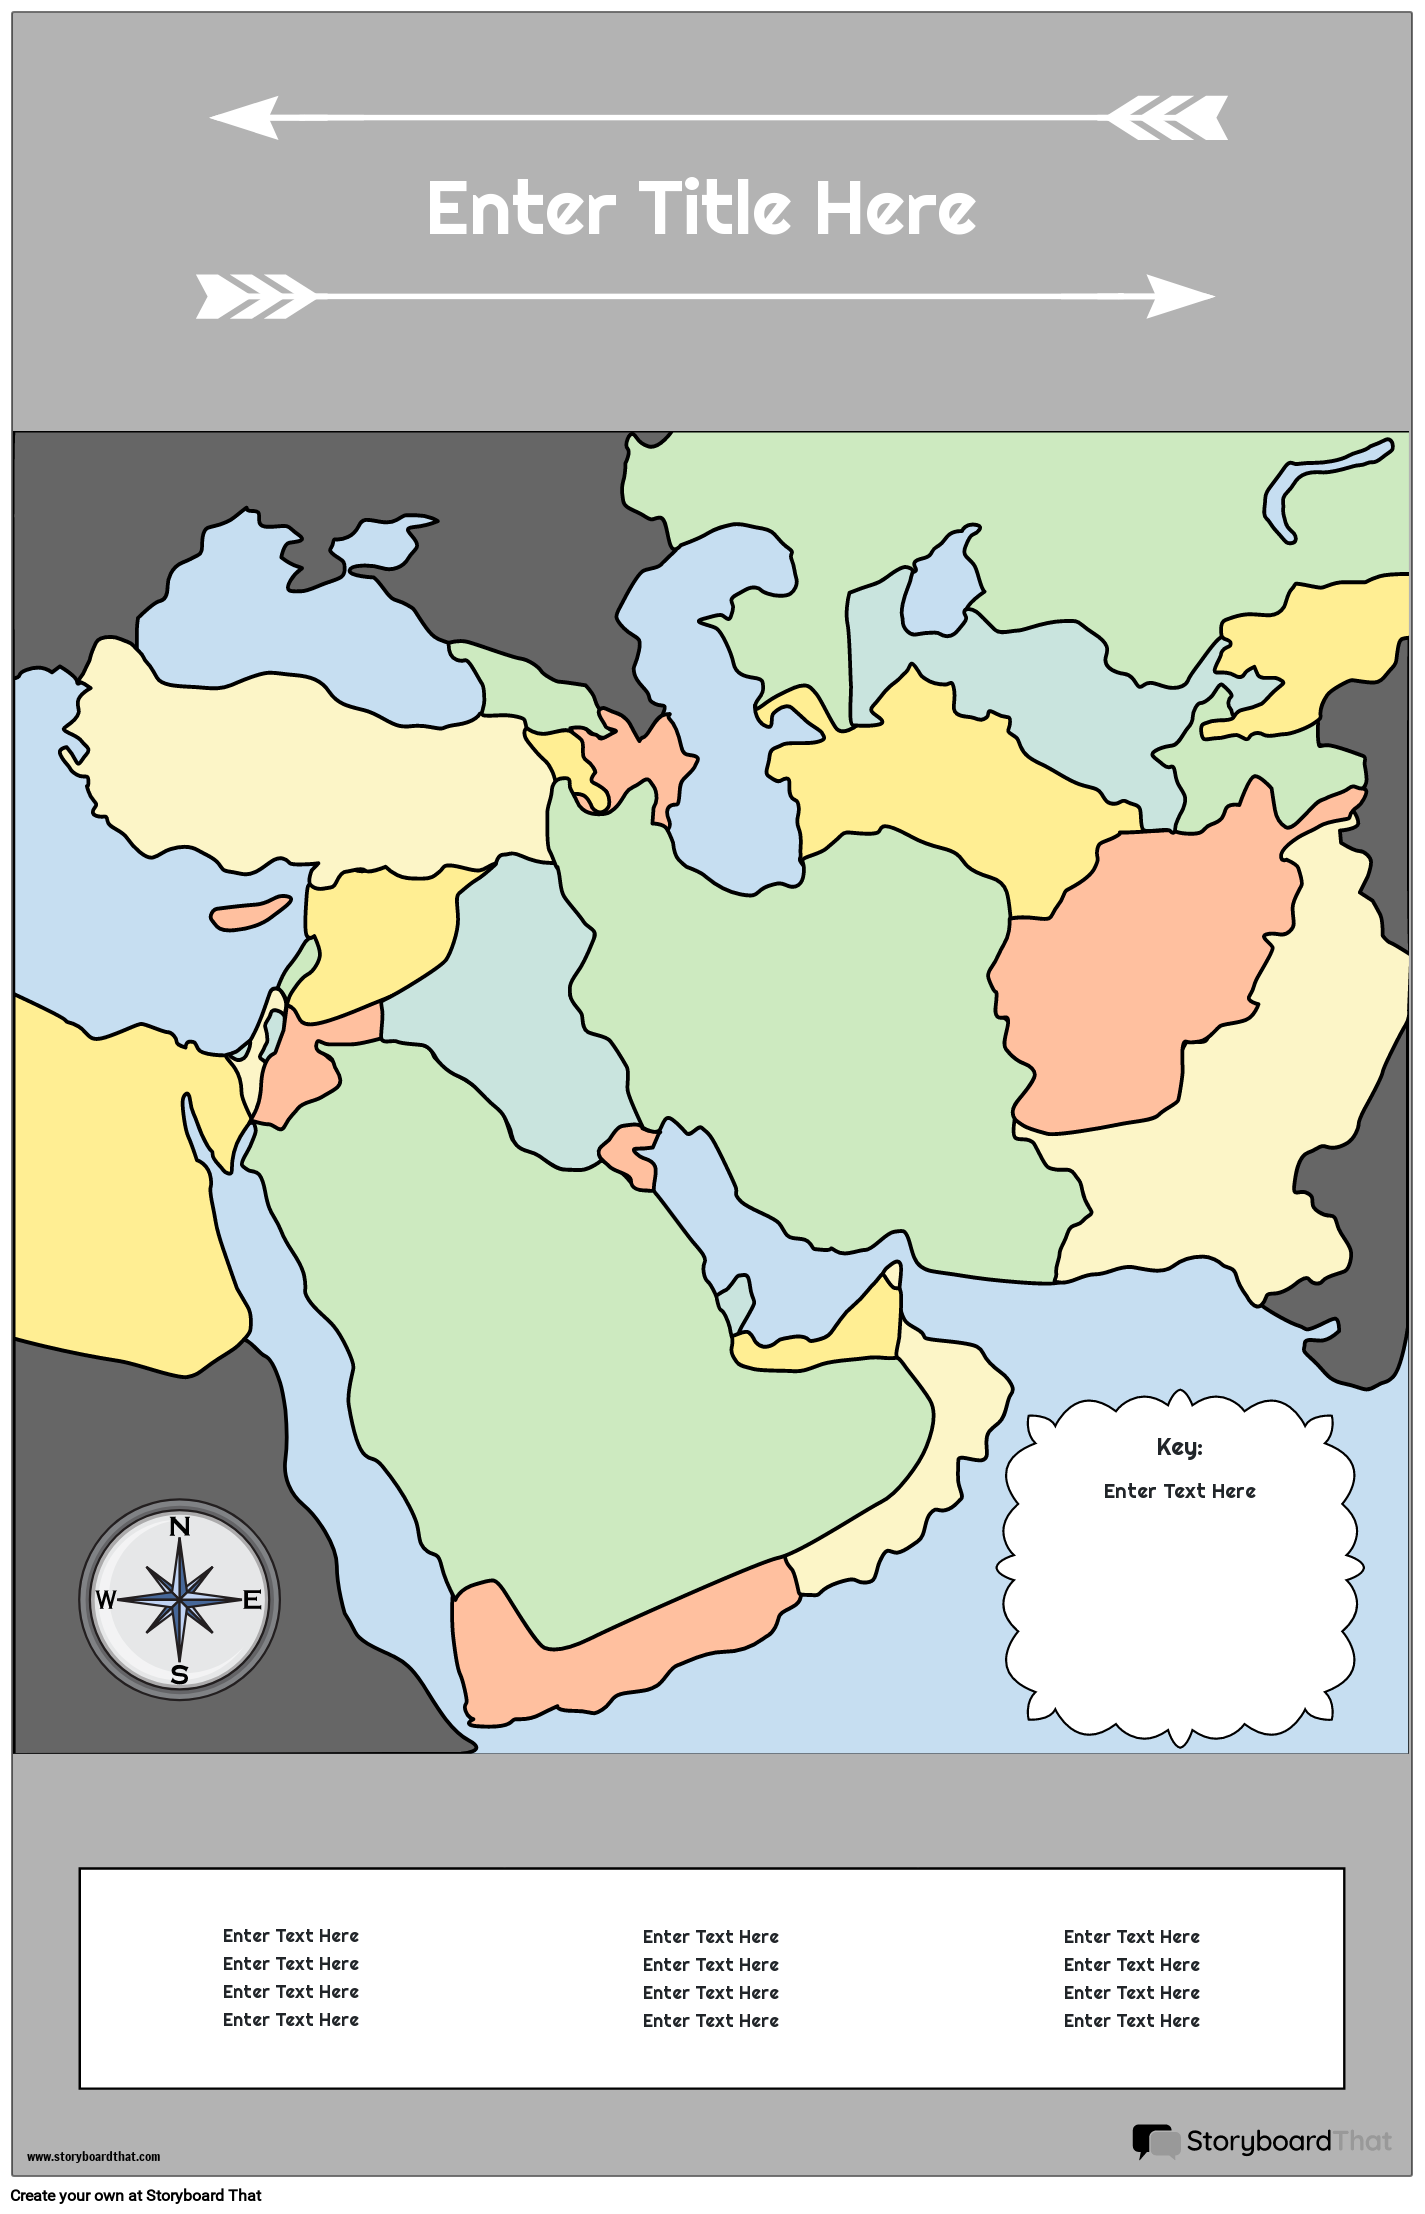 Karttajuliste 29 Värimuotokuva Lähi-itä Storyboard